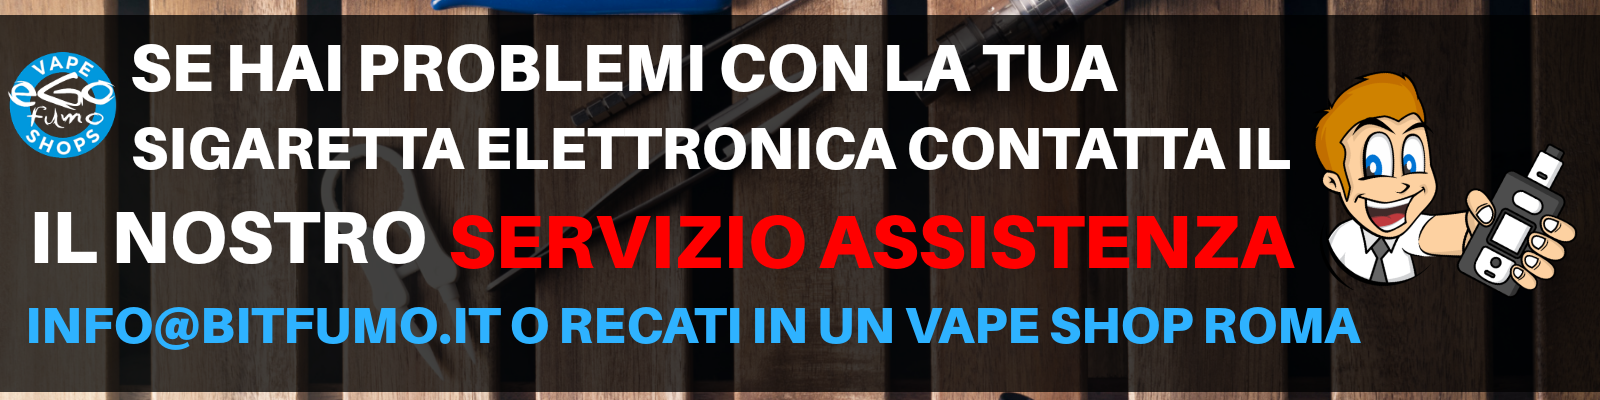 assistenza-sigaretta-elettronica-italia